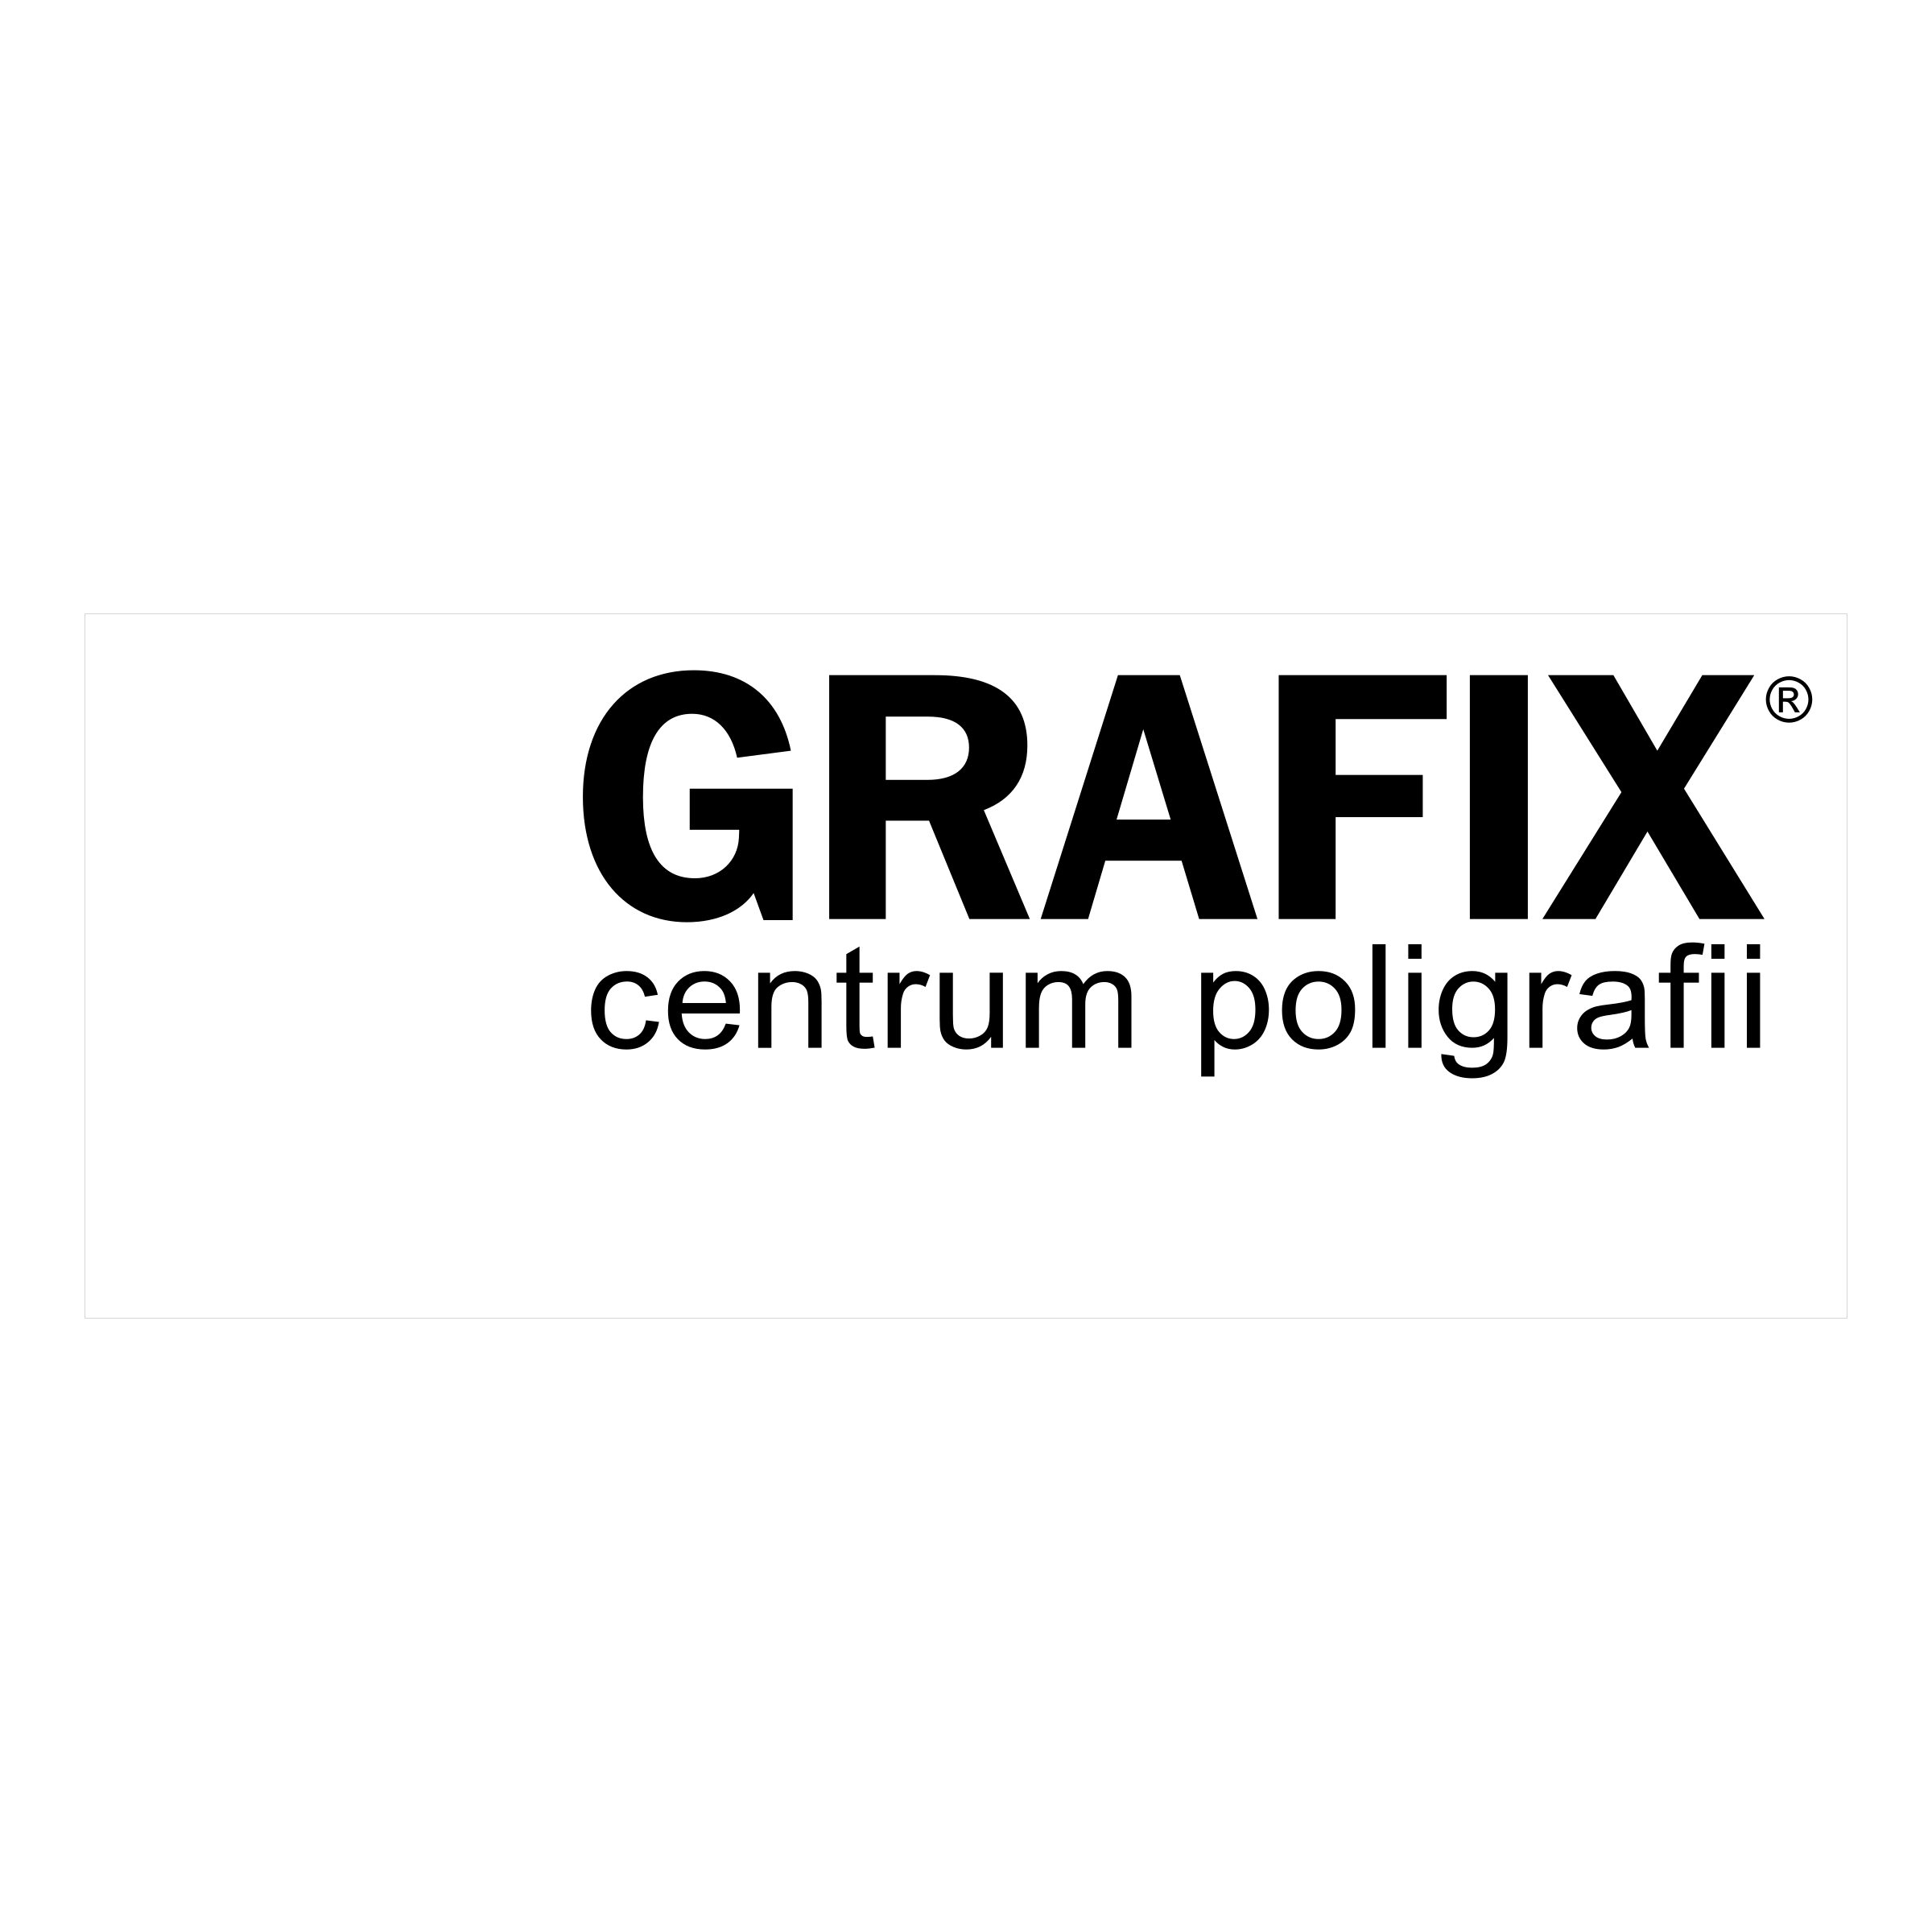 Grafix Logo - Grafix Logo PNG Transparent & SVG Vector - Freebie Supply